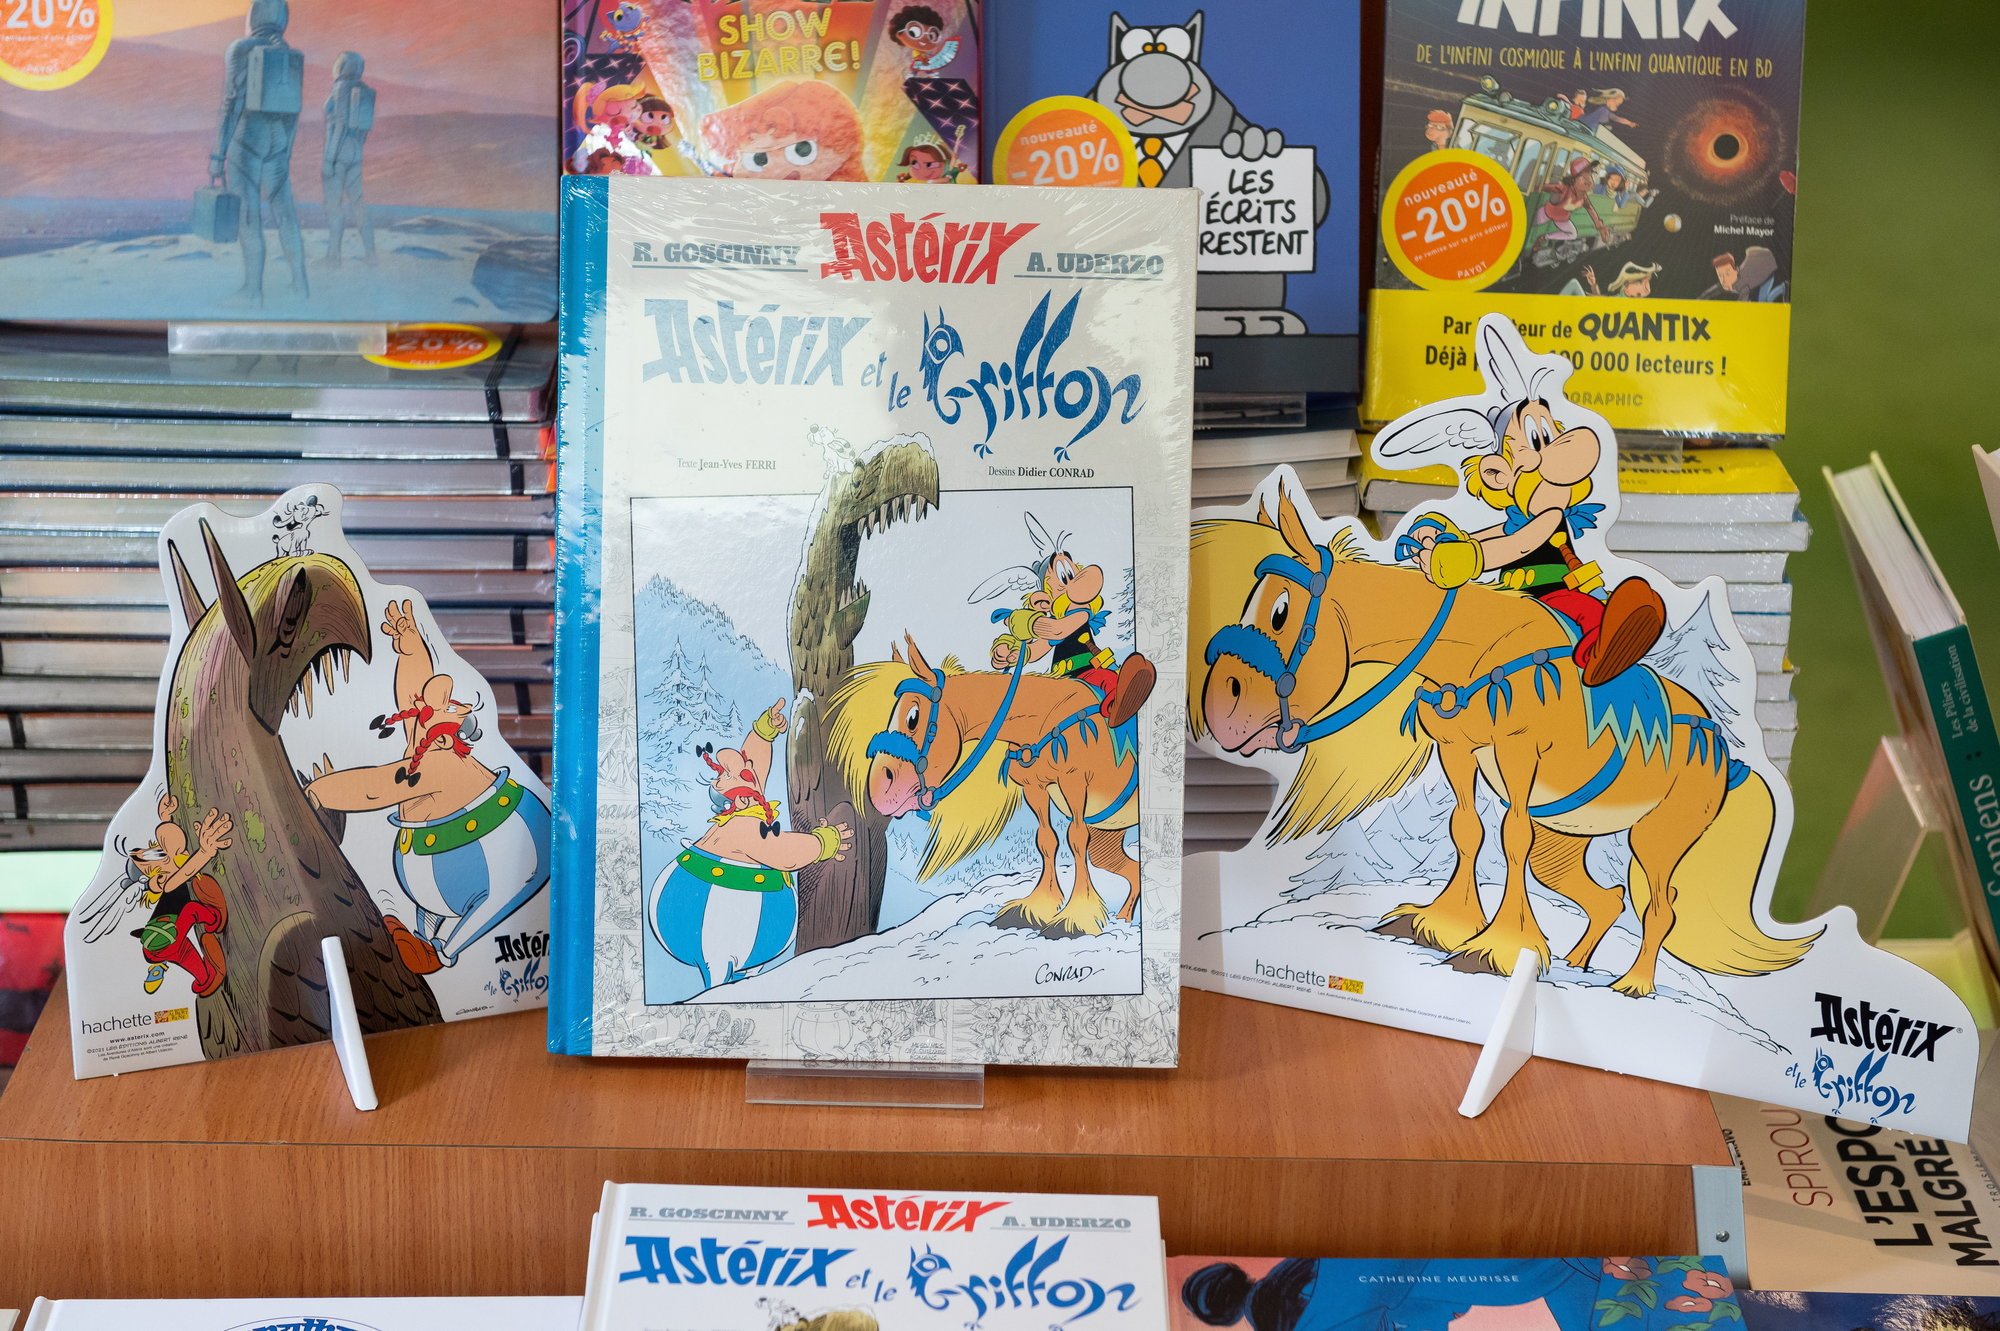 «Astérix et le Griffon», 39e album de la série, rencontre un franc succès dans les librairies neuchâteloises.